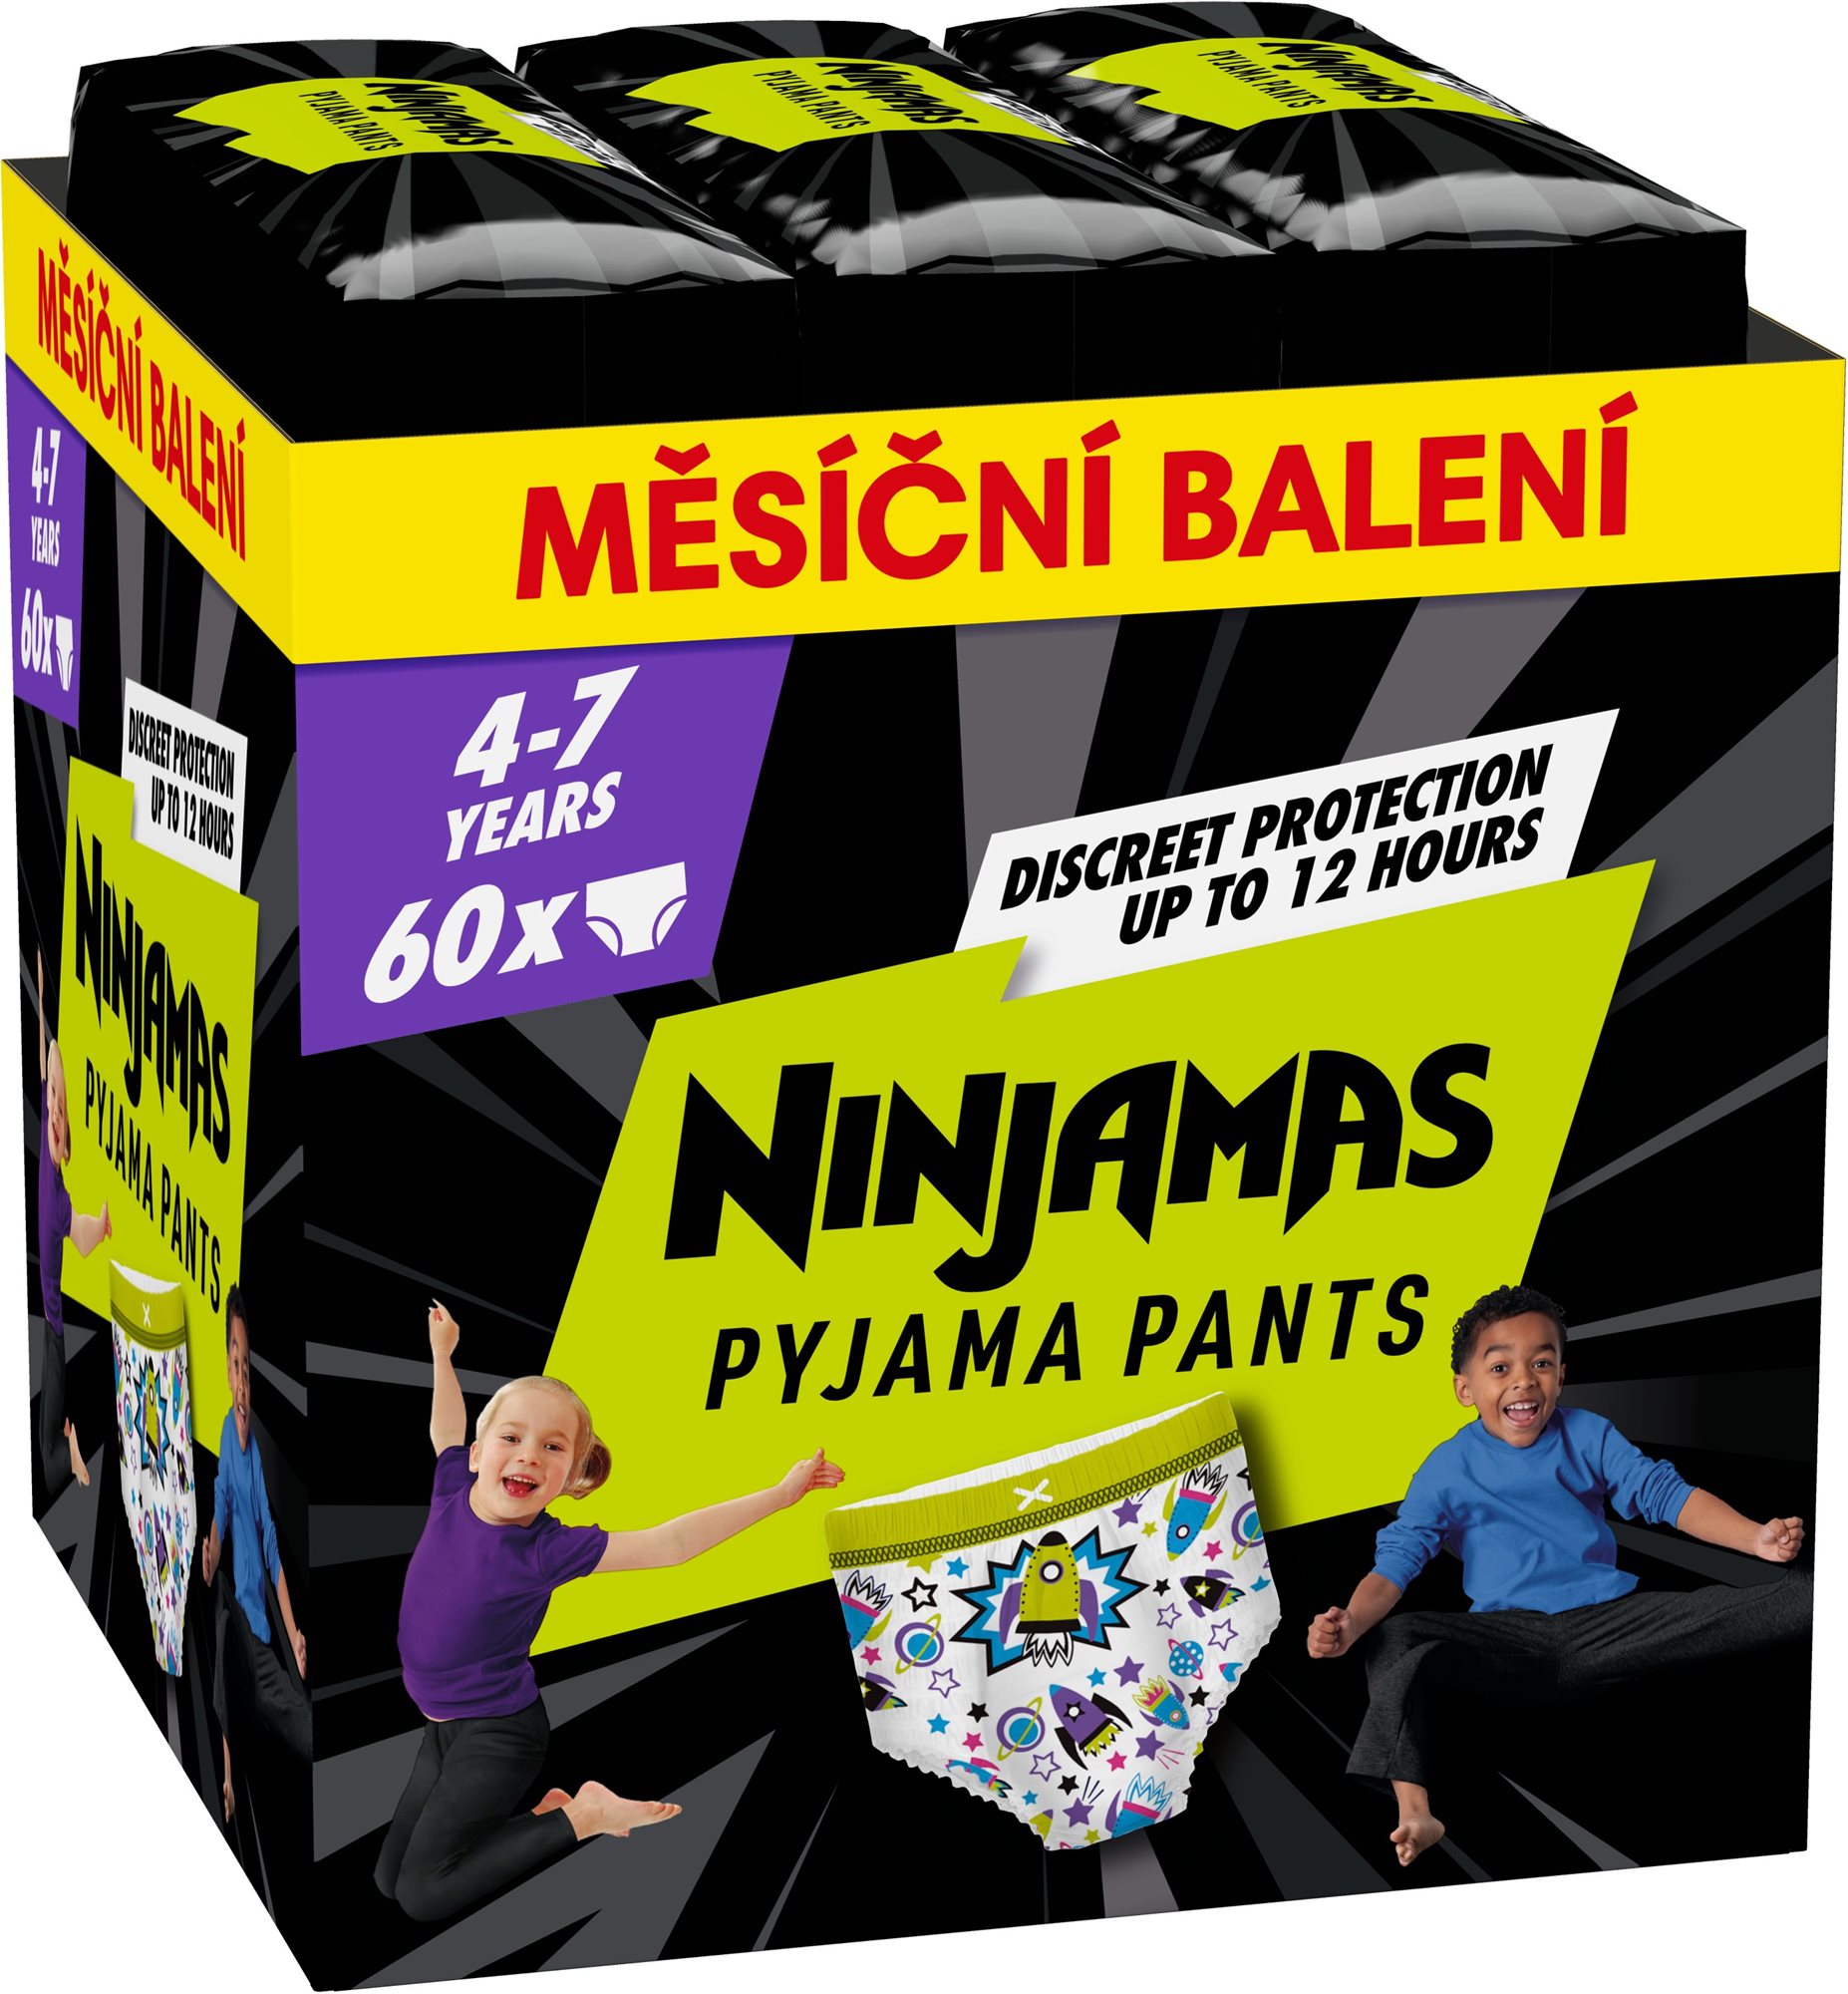 PAMPERS Ninjamas Pyjama Pants Kosmické lodě 4 – 7 let (60 ks)